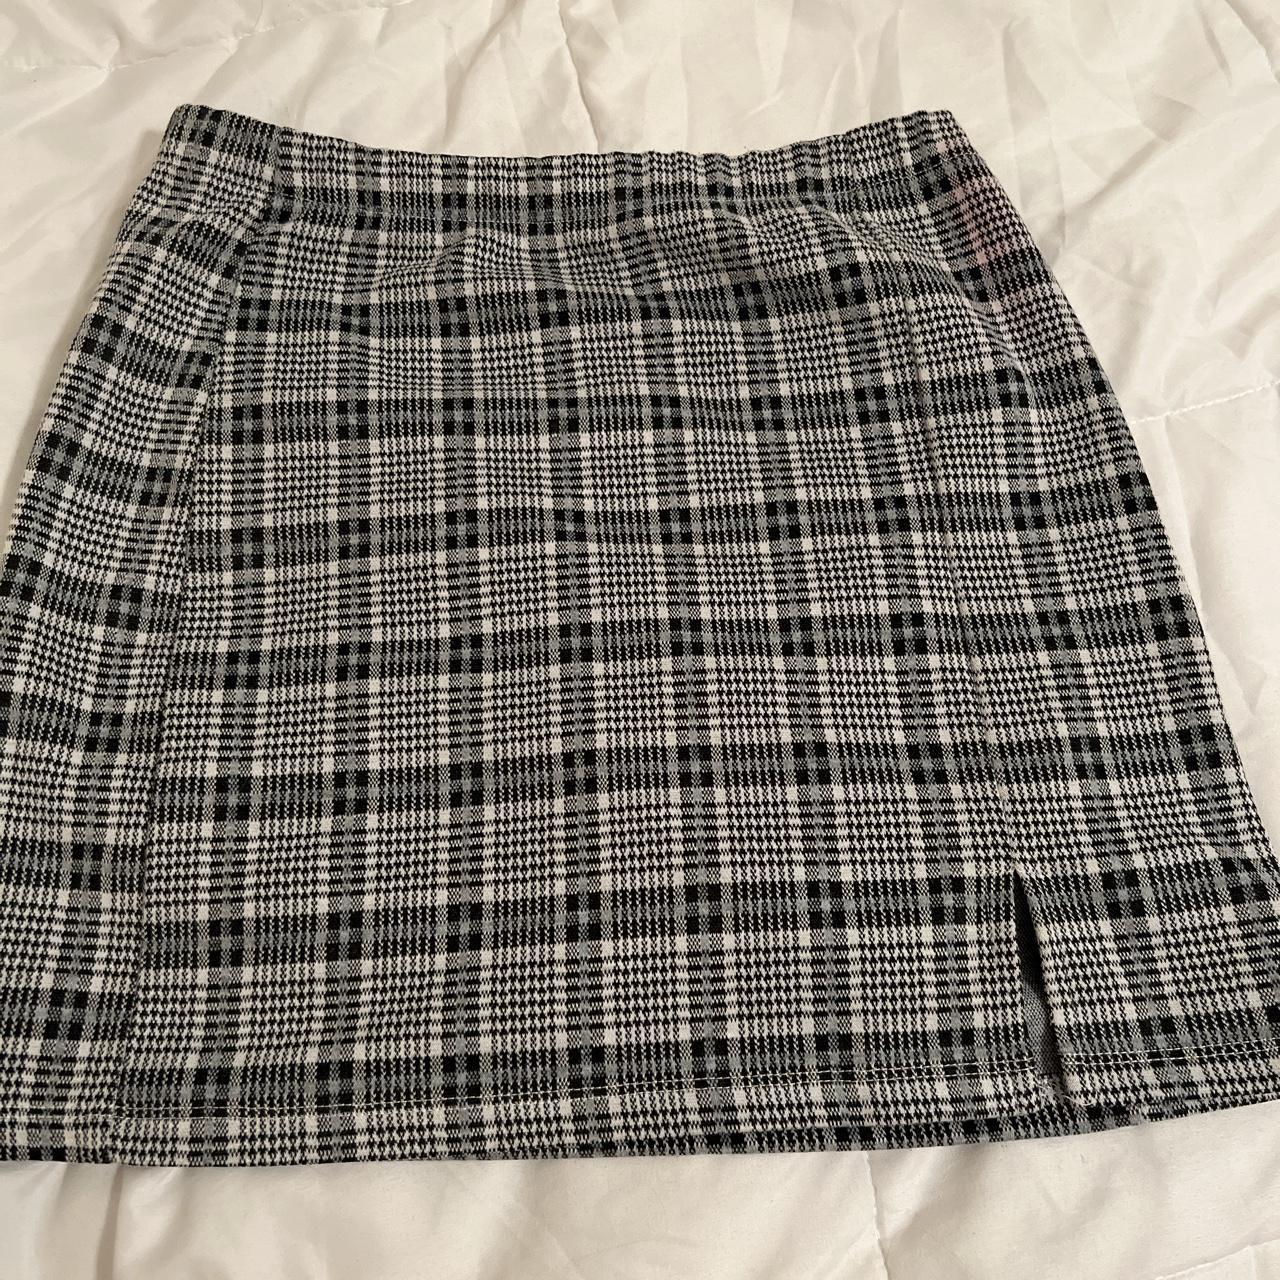 Bodycon plaid skirt w slit stretchy - Depop